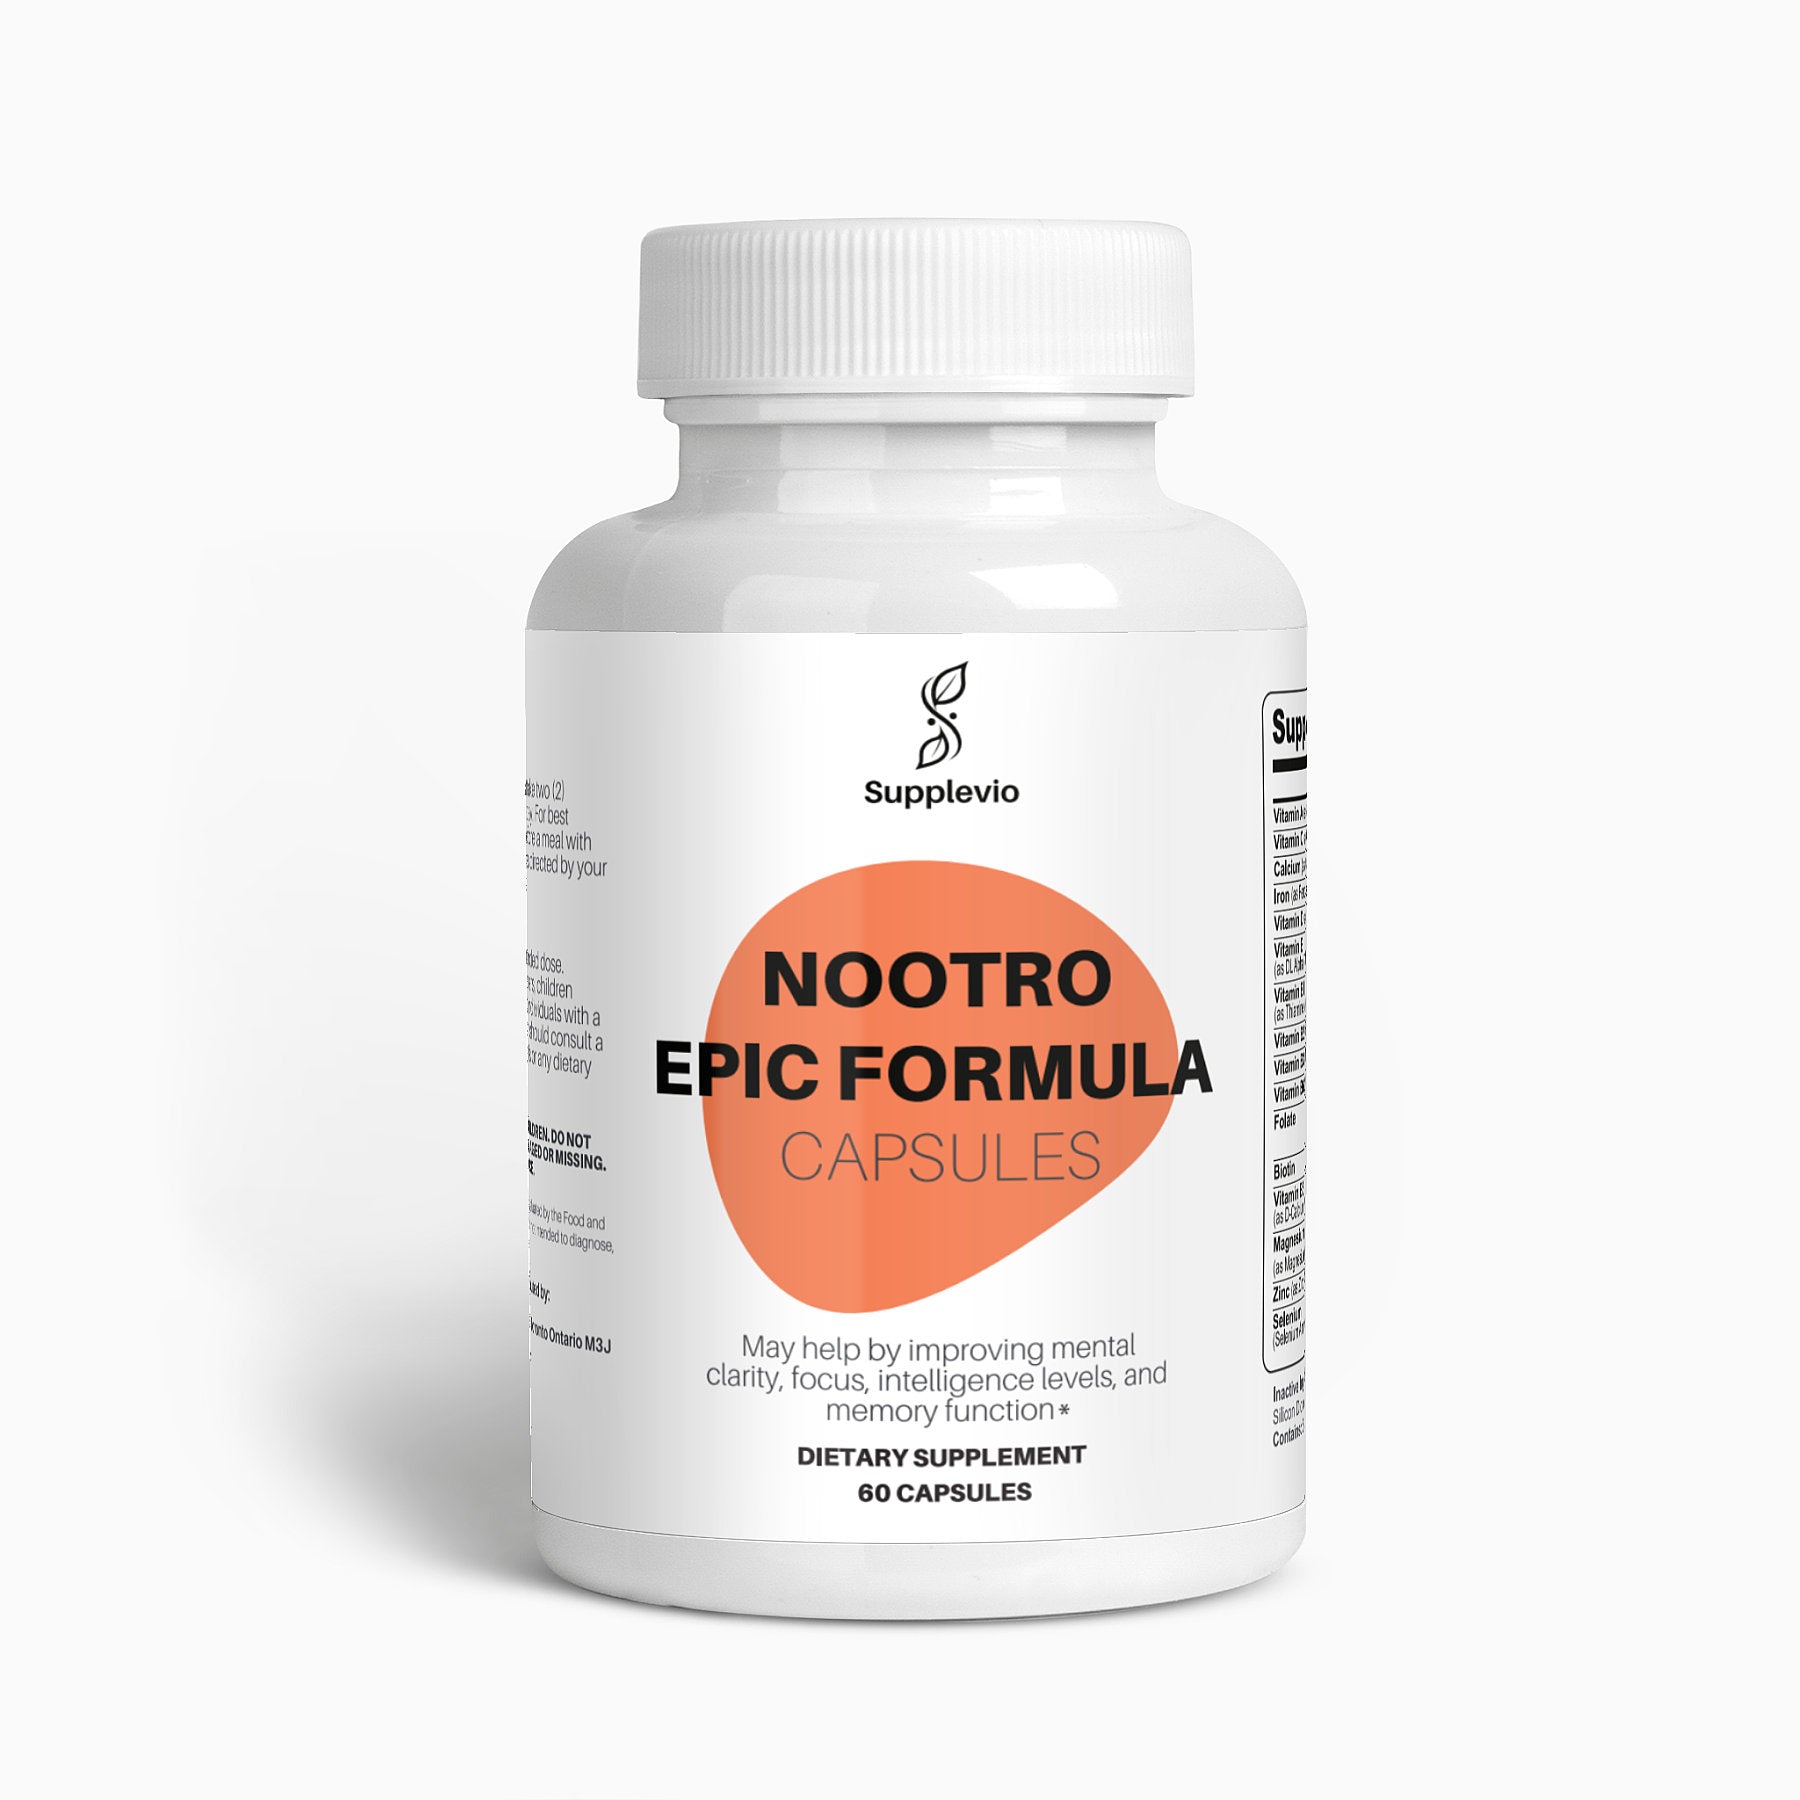 Nootro Epic Formula